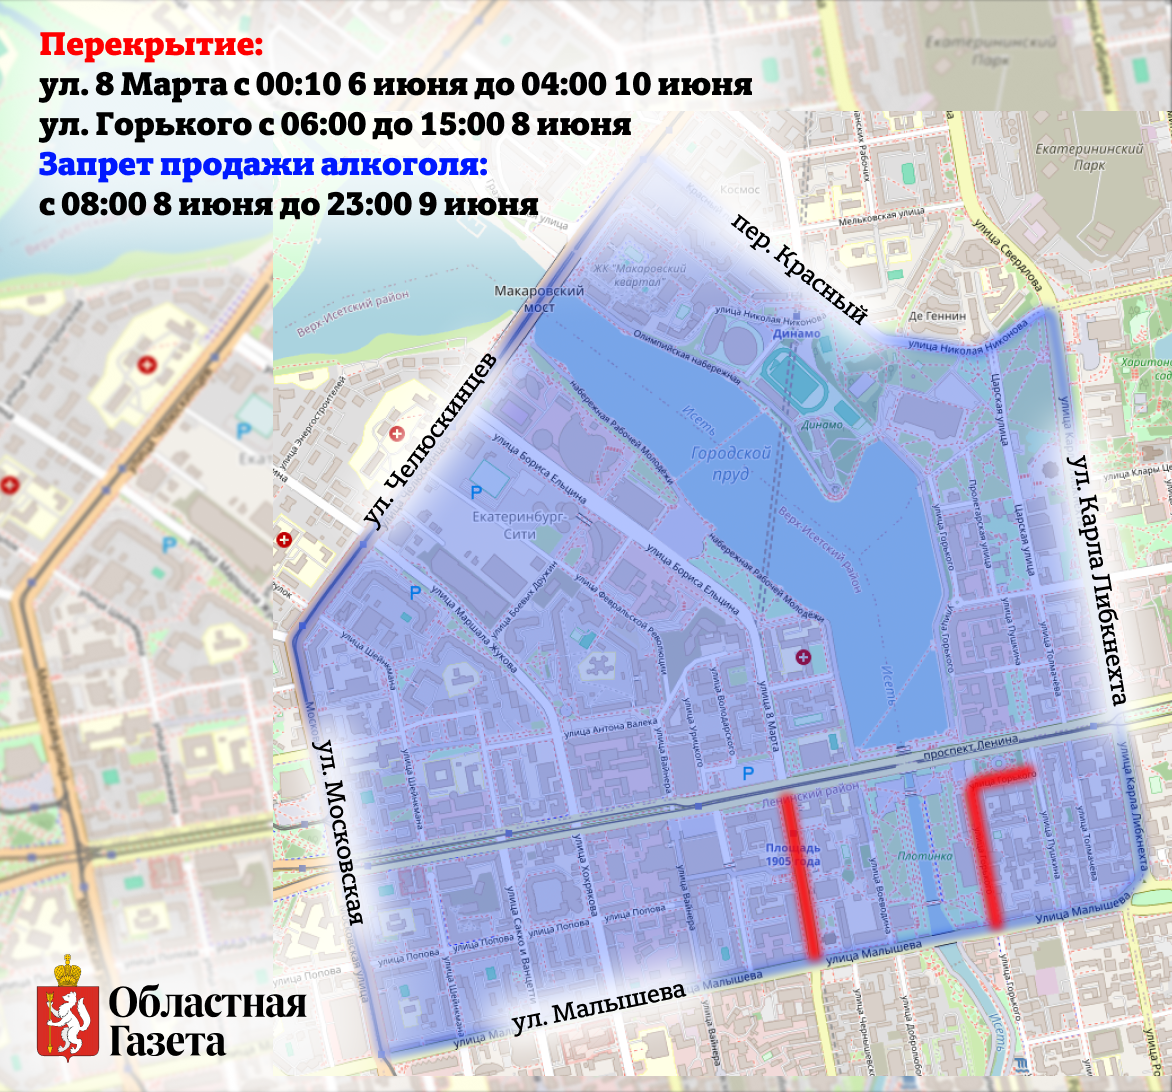 В Екатеринбурге во время фестиваля «Движение» изменятся маршруты общественного транспорта